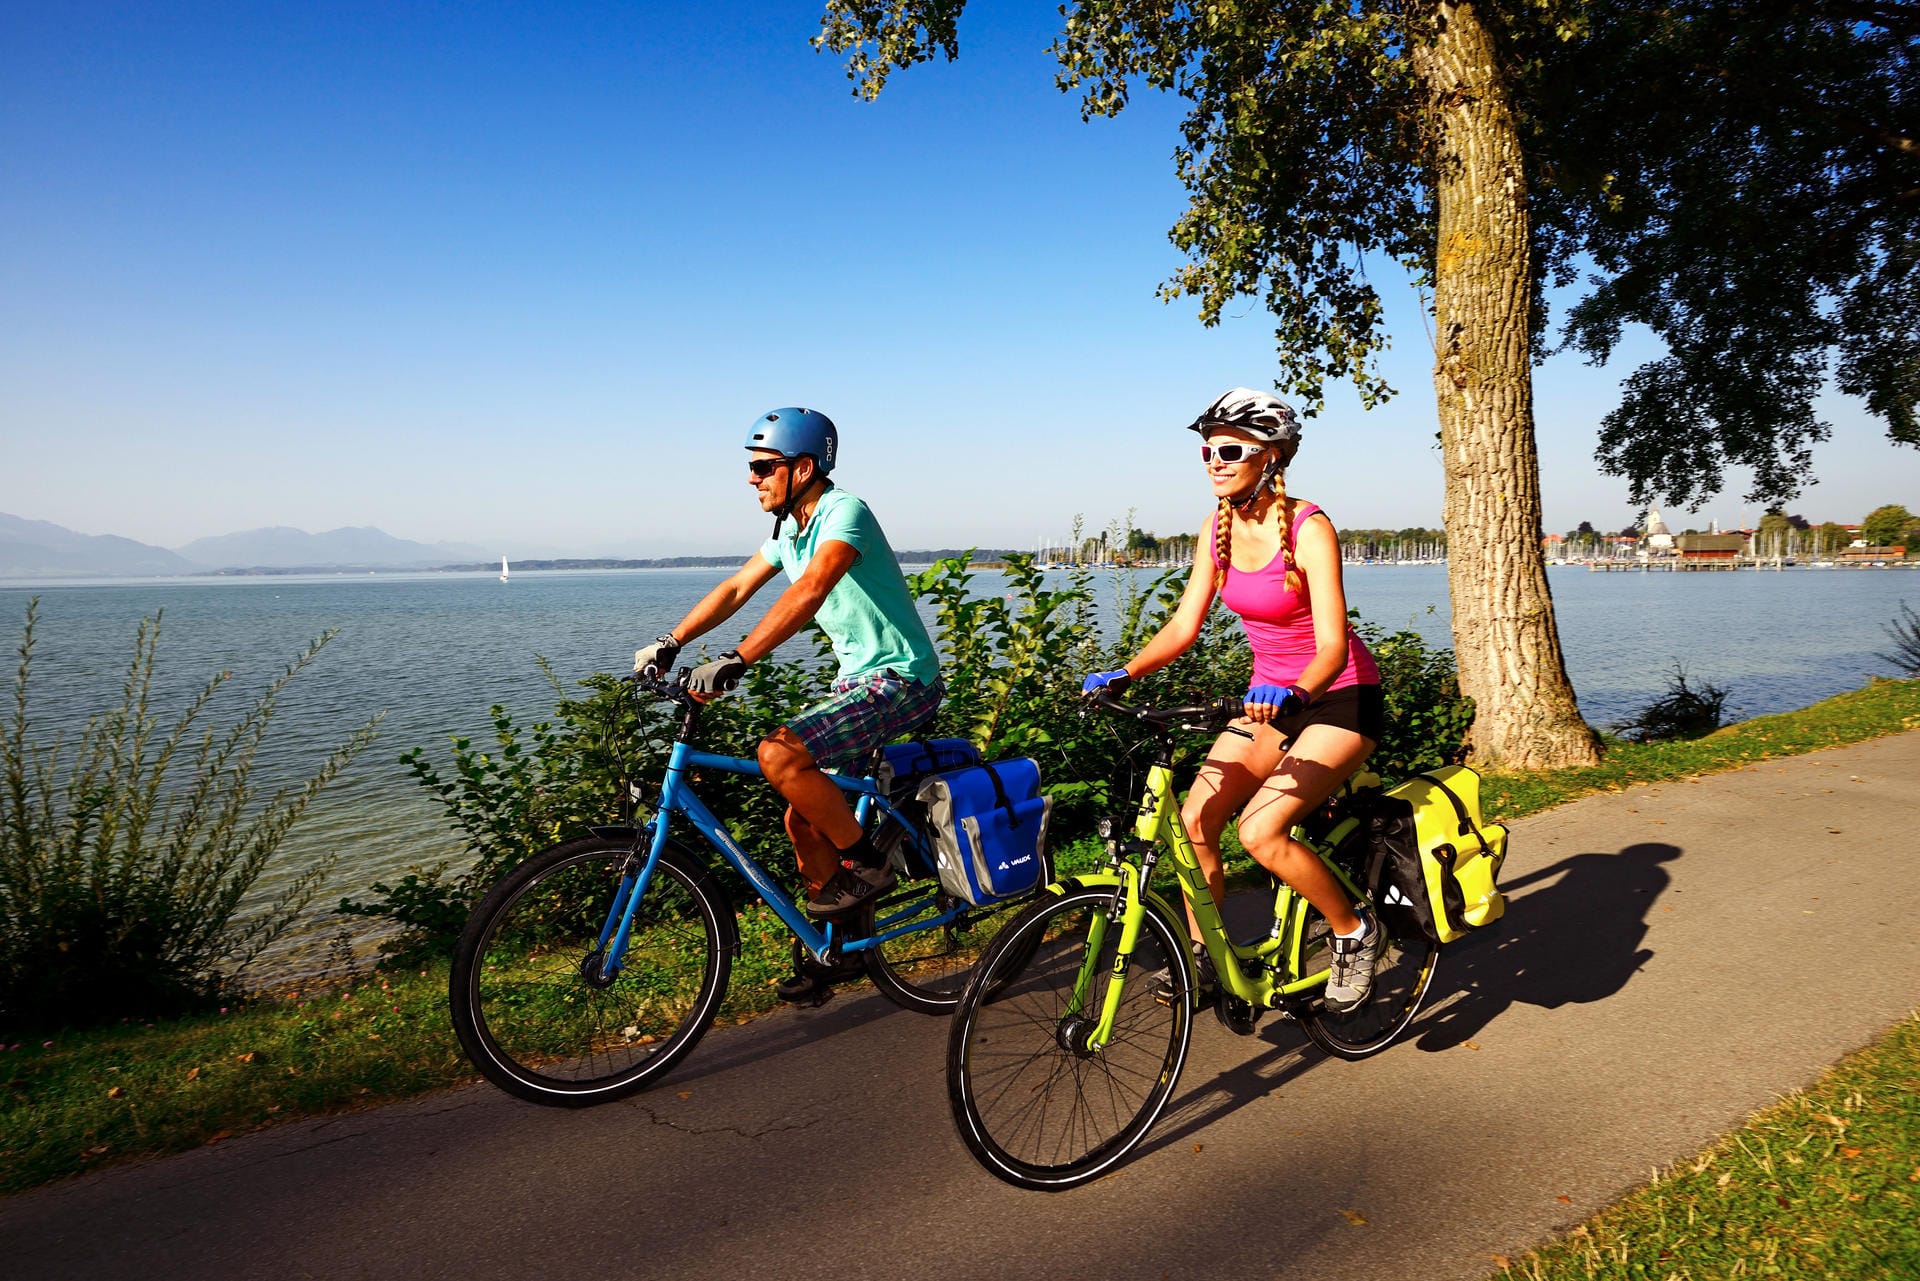 Auf zwei Rädern um den Chiemsee – wie hier bei Seebruck erkunden viele Touristen das "Bayerische Meer" gerne vom Fahrradsattel aus.